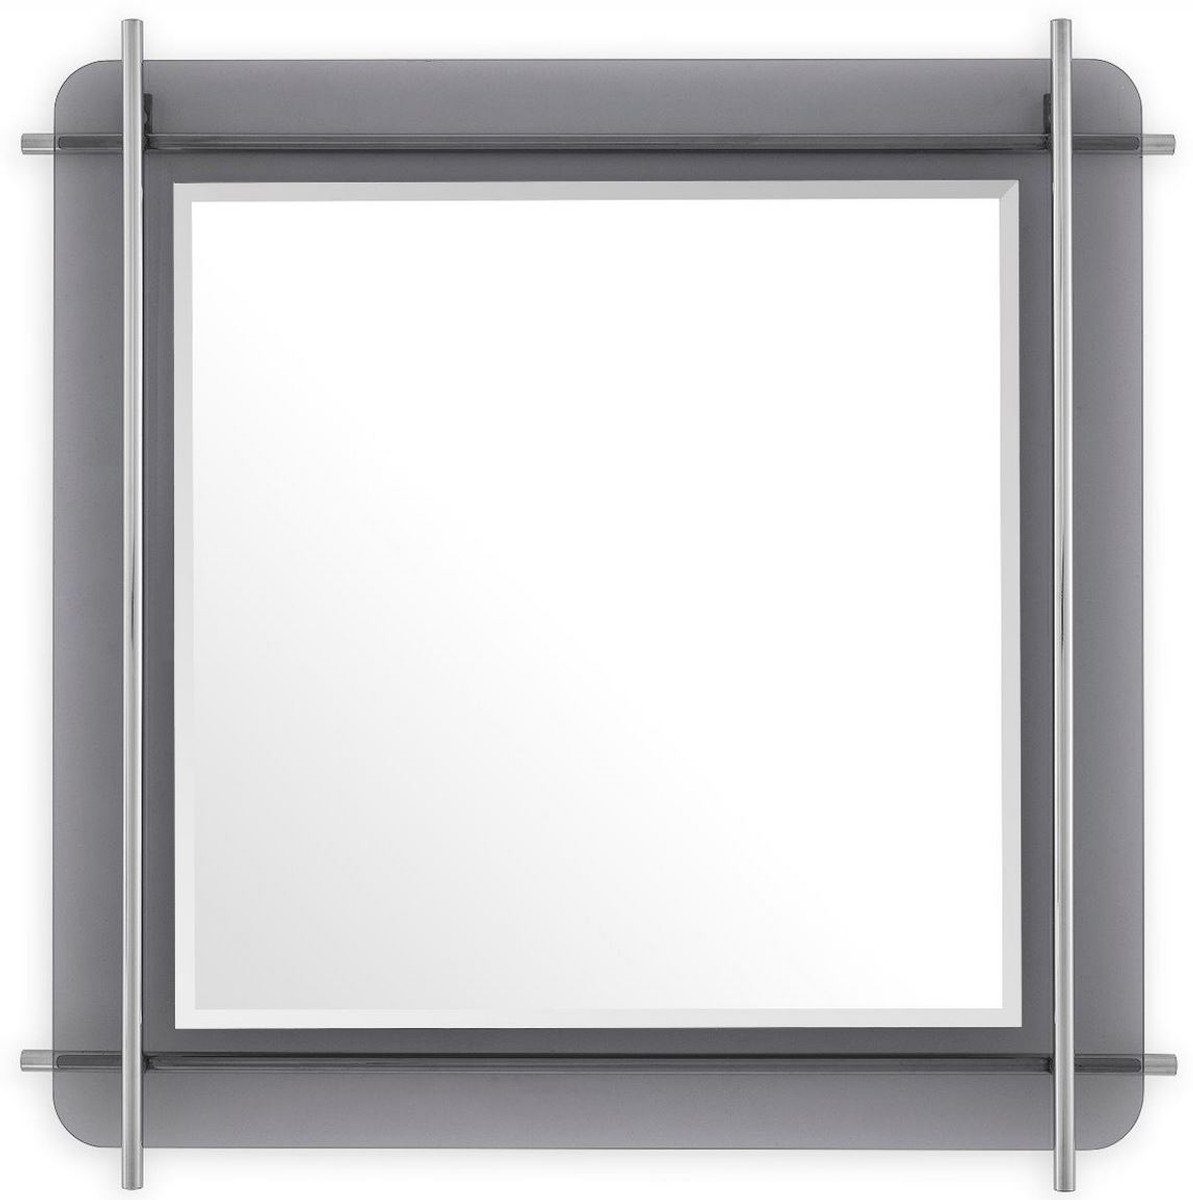 Casa Padrino Spiegel Luxus Spiegel Silber / Grau 85,5 x 5 x H. 85,5 cm - Quadratischer Wandspiegel mit grau getöntem Glasrand und Edelstahl Stangen - Luxus Kollektion